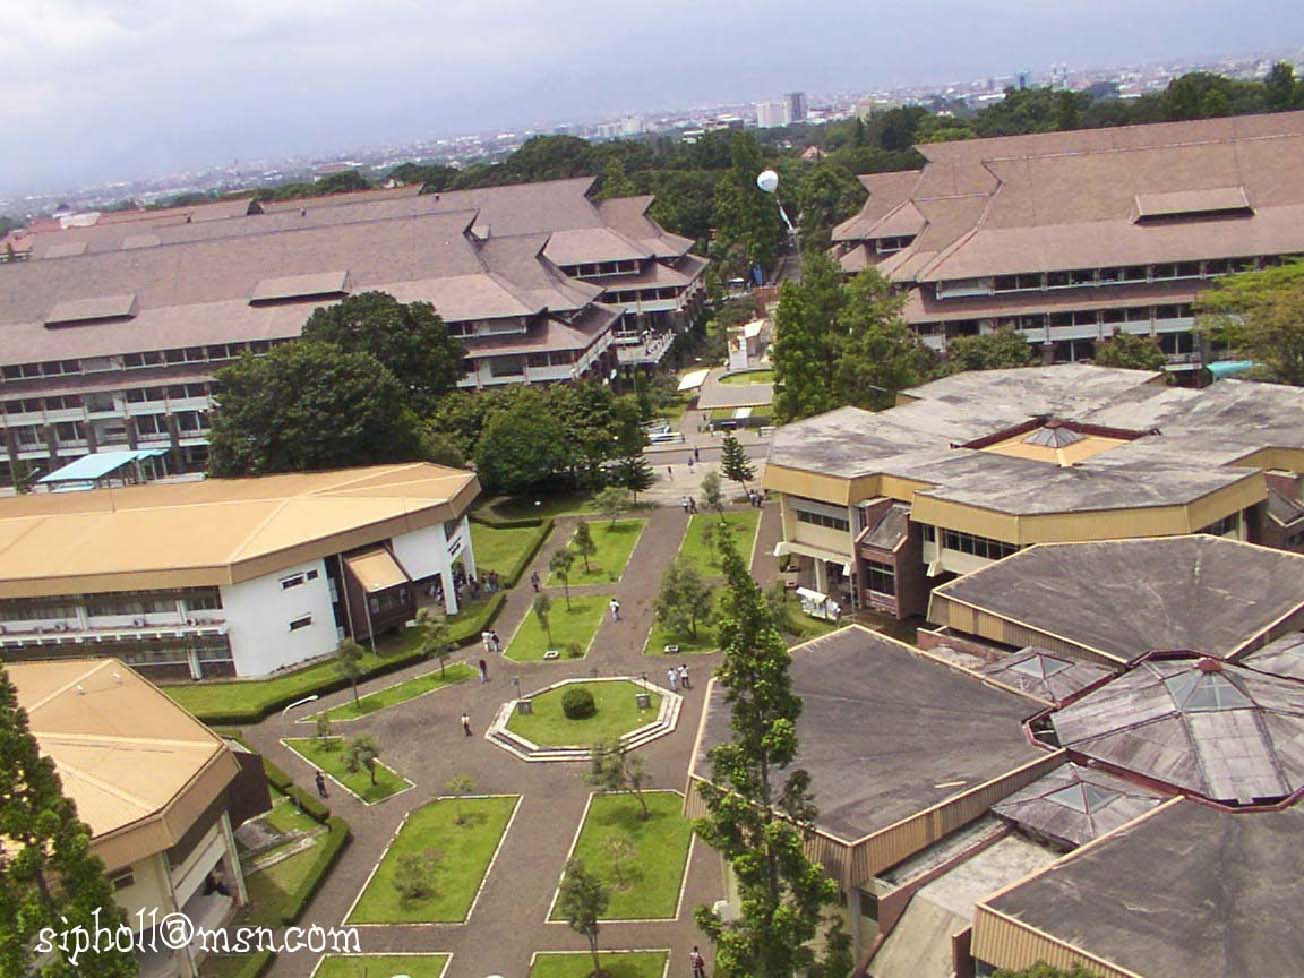 Institut Teknologi Bandung Est.1959